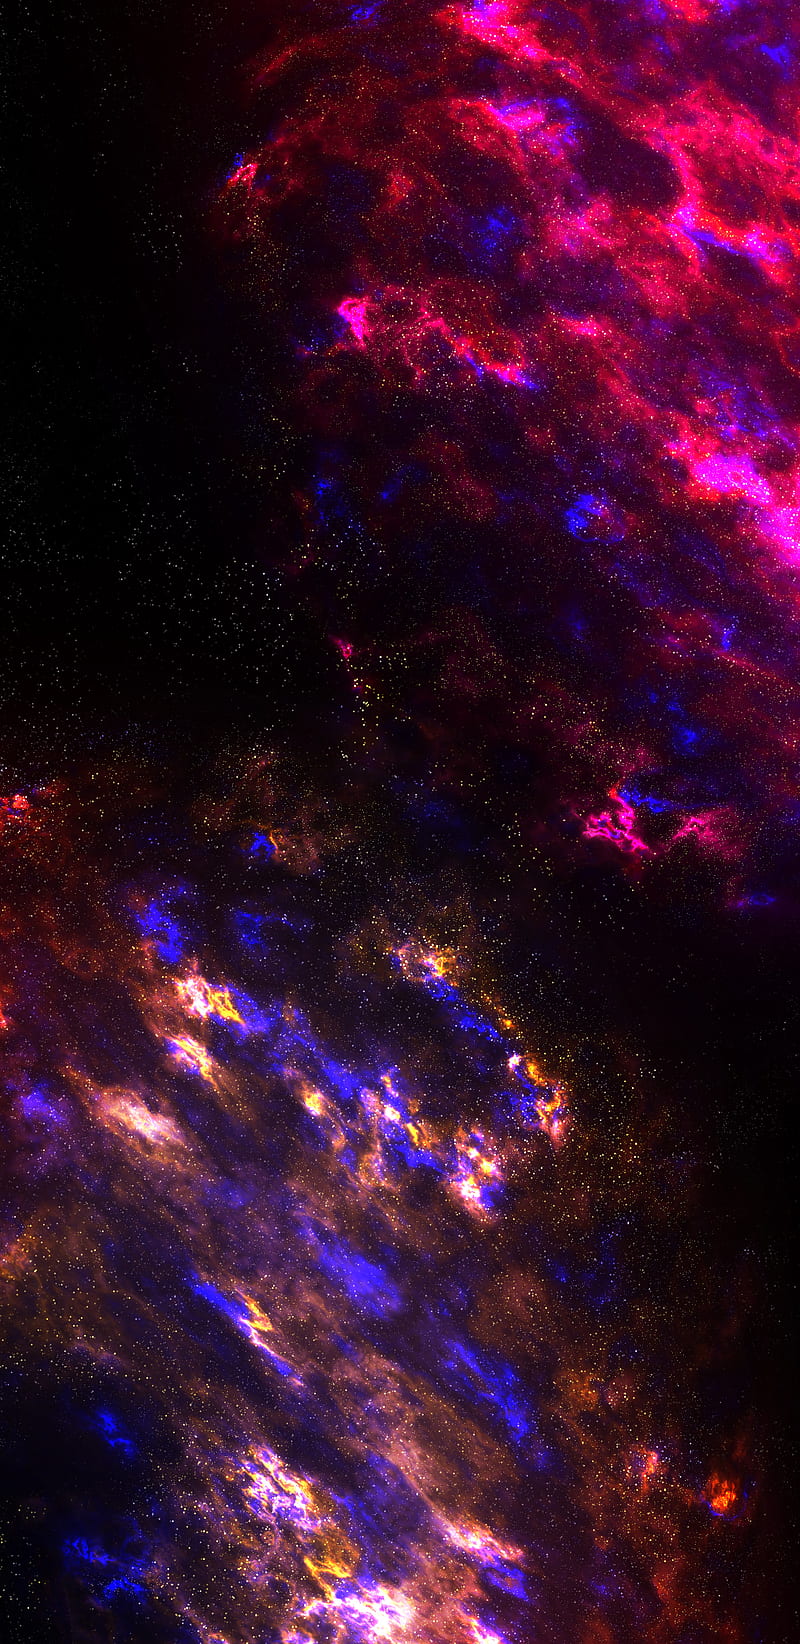 Với màu đỏ đa sắc của thiên hà, hình ảnh này sẽ khiến bạn phải trầm trồ ngưỡng mộ những bộ phim viễn tưởng đầy tuyệt vời và kì diệu.